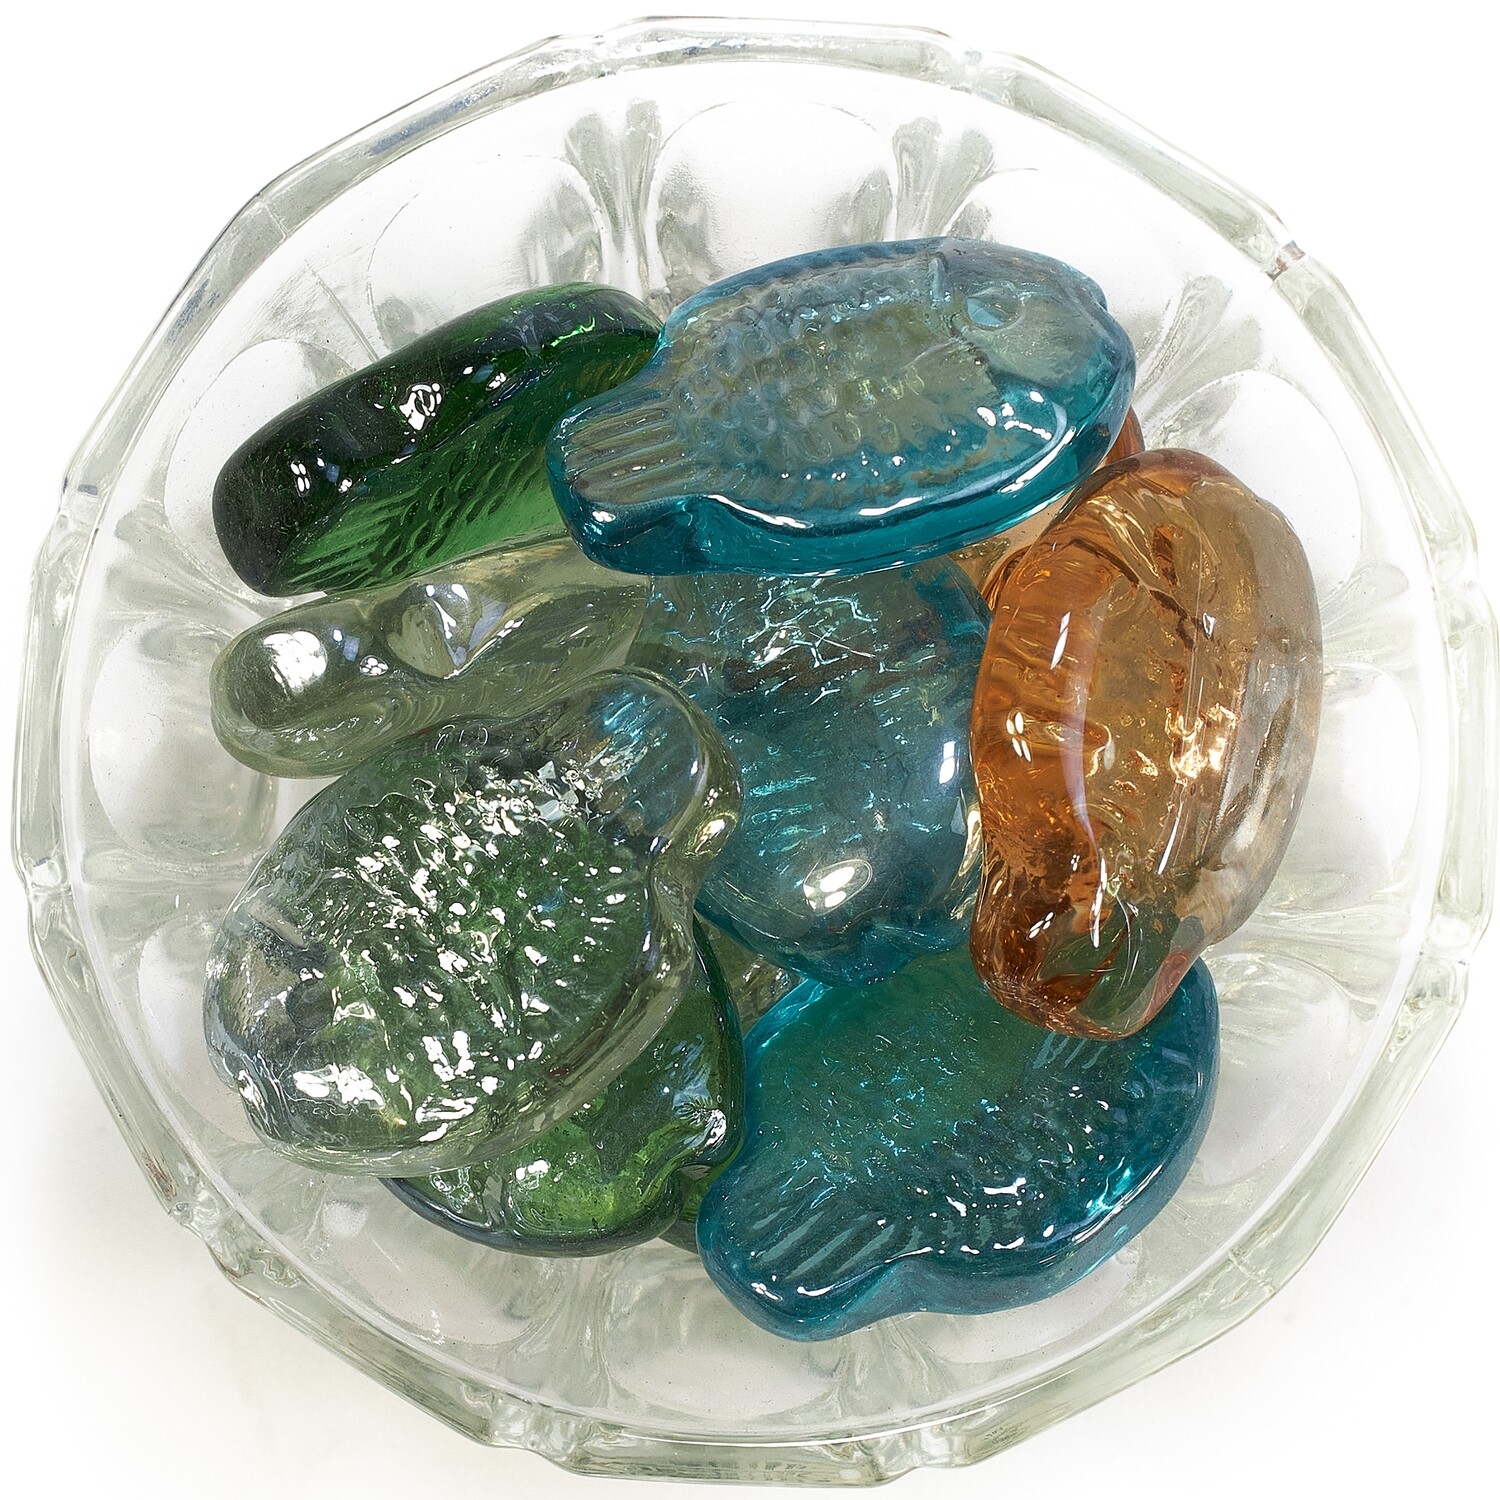 Камни KUN LONG декоративные, стеклянные, в виде рыбок, для аквариума (в мешке 5кг)